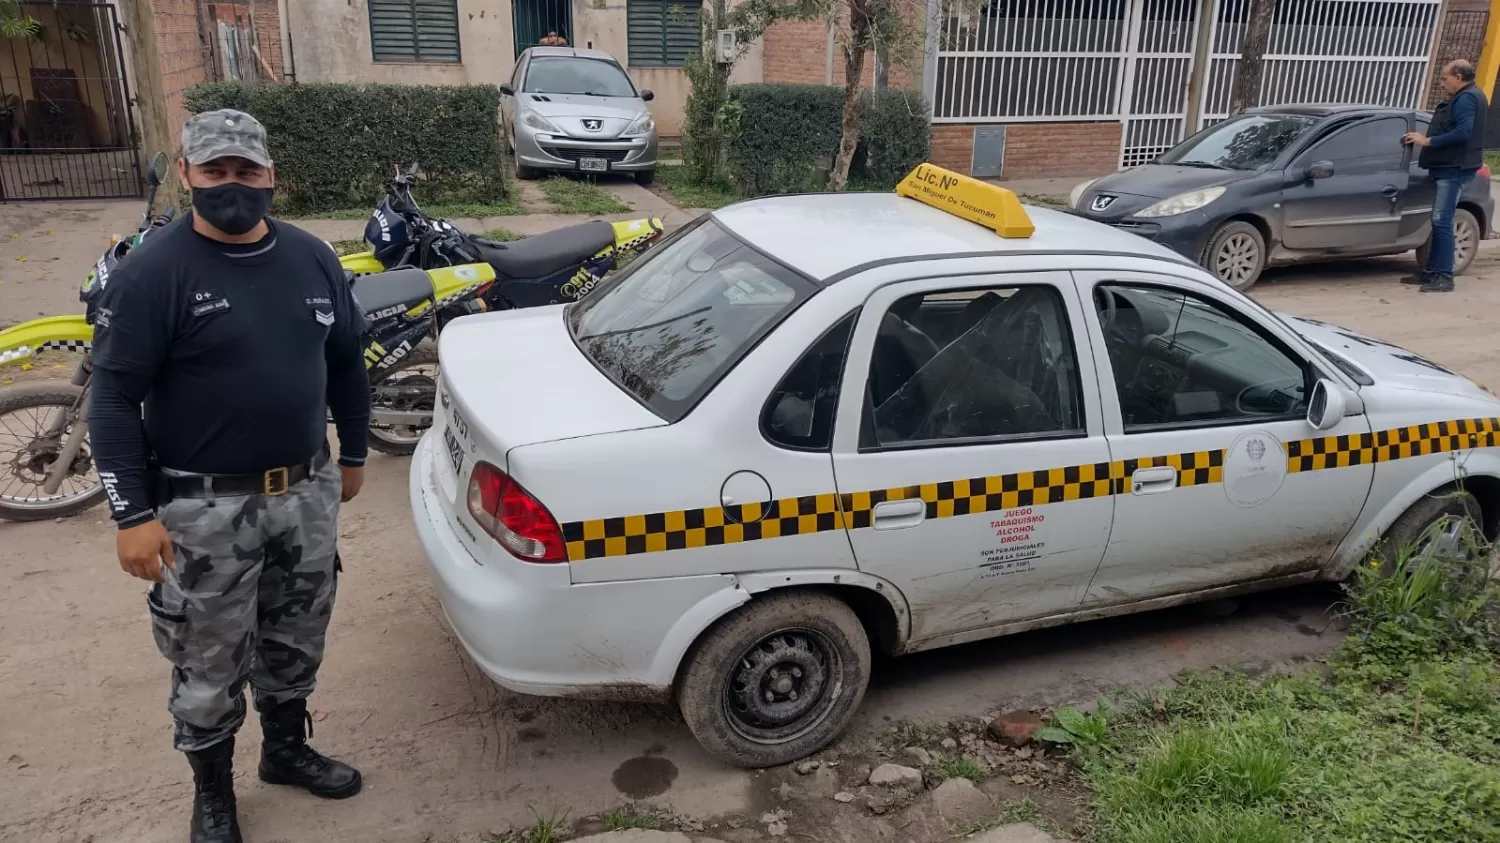 RECUPERADO. Un agente custodia el taxi robado, luego del operativo. Foto: Ministerio de Seguridad